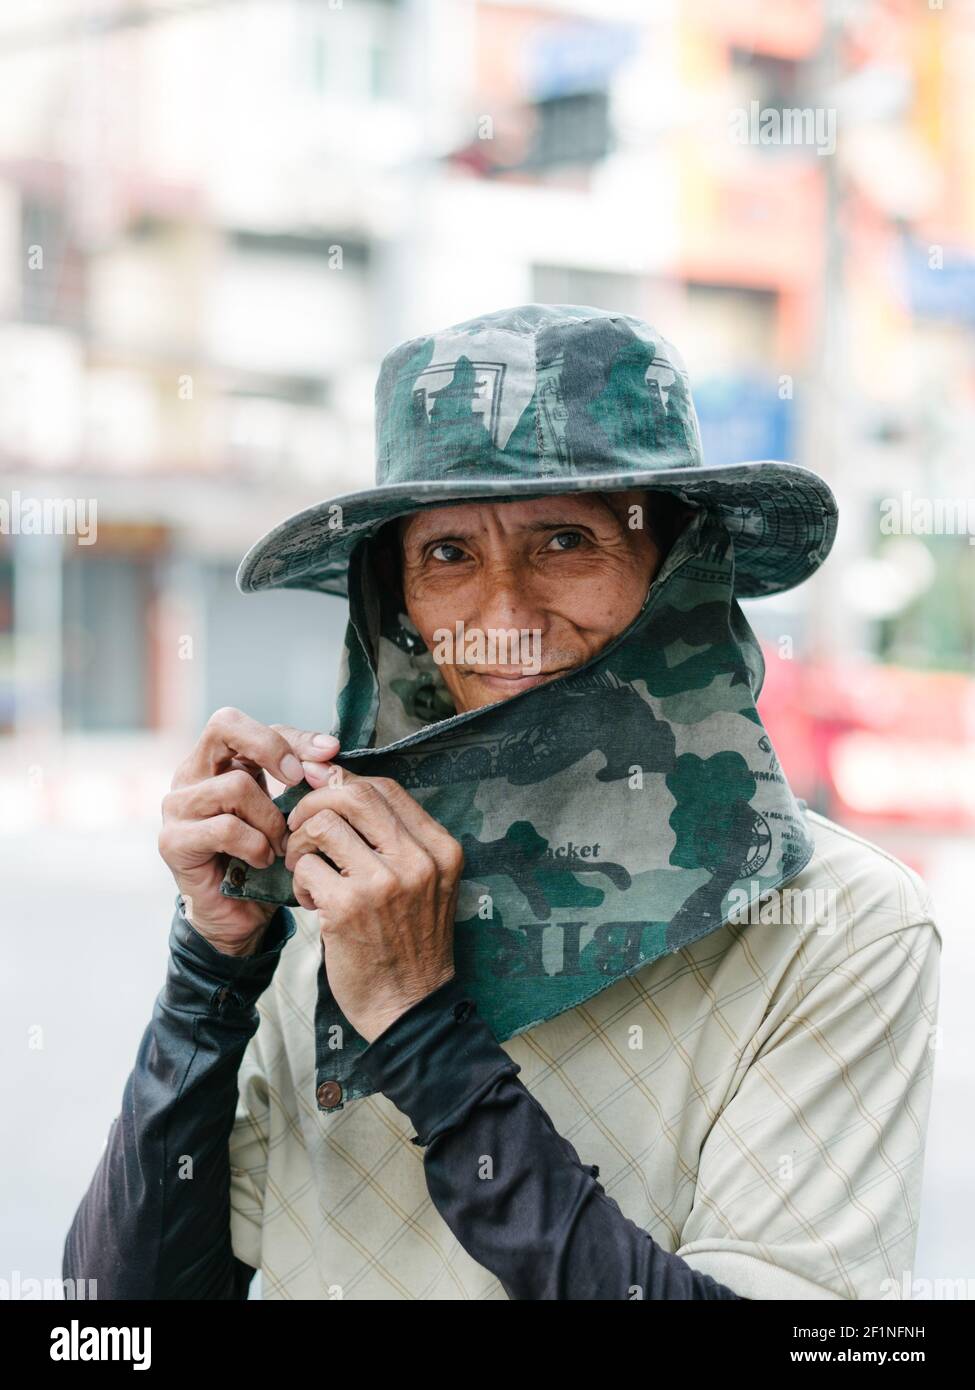 Primo piano di un operaio asiatico che indossa un grande cappello e una copertura facciale come protezione dal sole che splazia, Bangkok Thailandia. Foto Stock